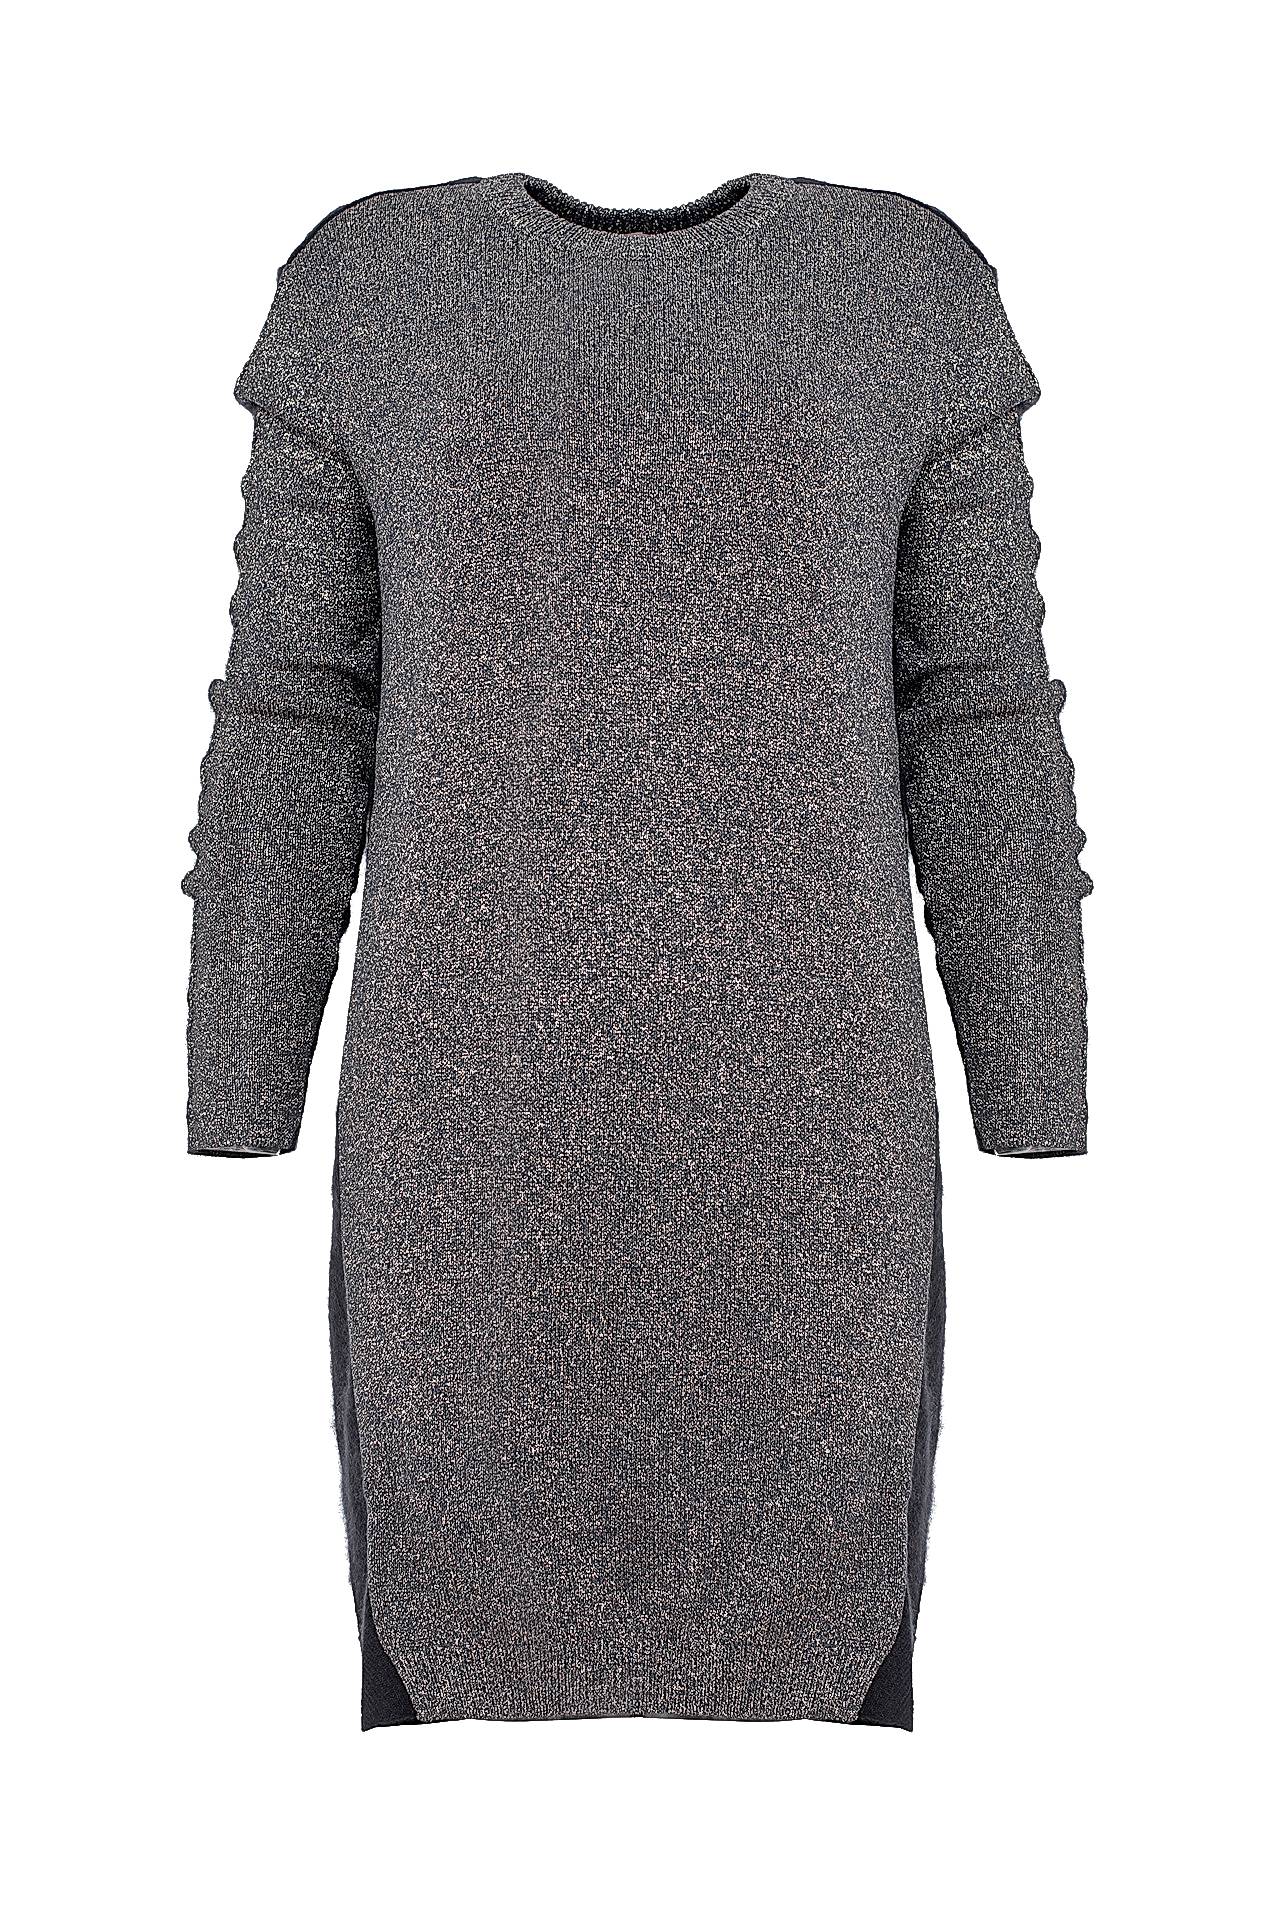 Одежда женская Платье NUDE (1101343/15.1). Купить за 19750 руб.